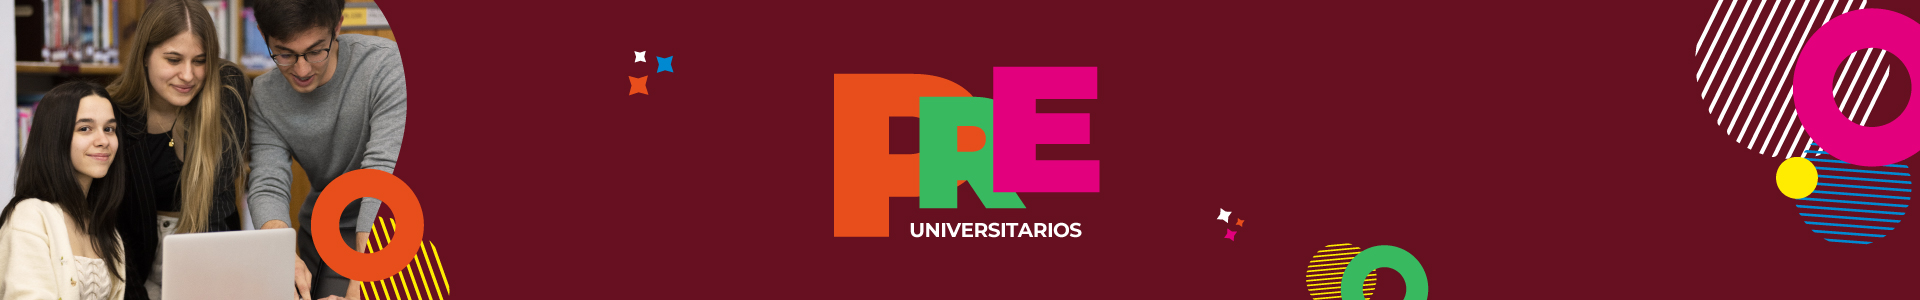 Estudiar en la universidad en Uruguay